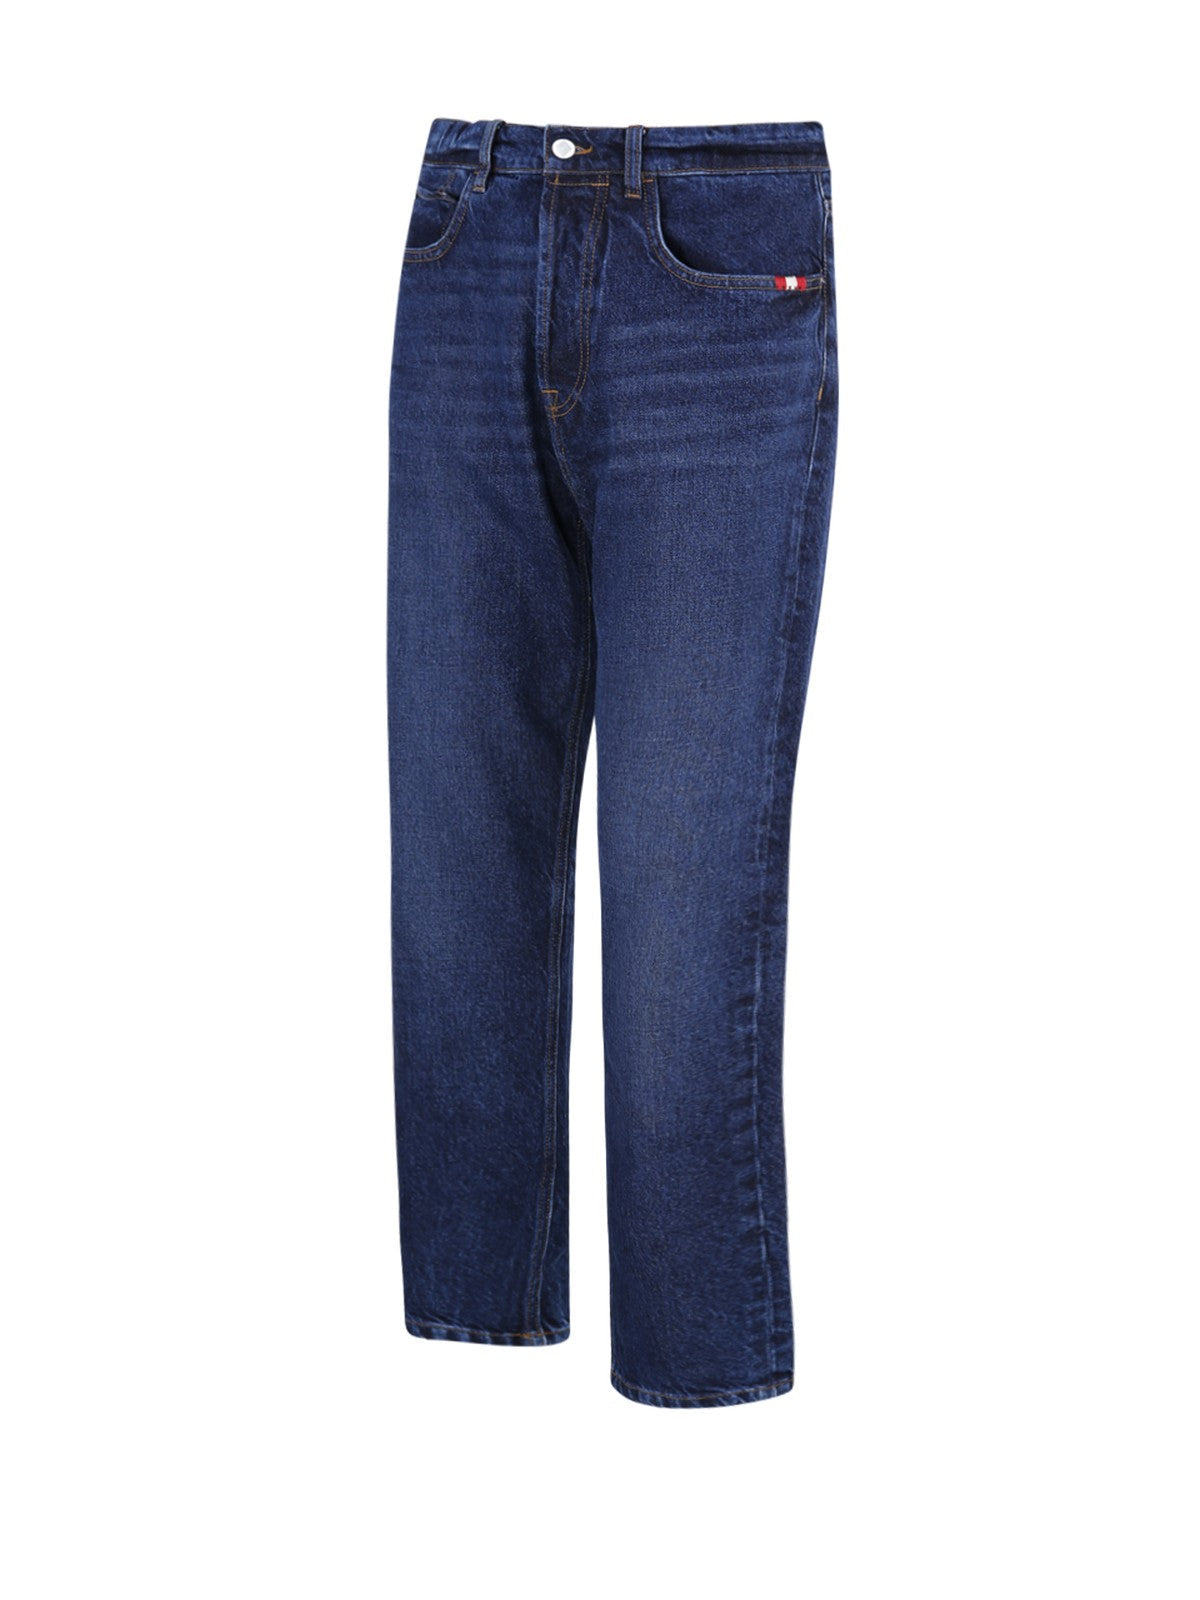 AMISH Jeans Hommes AMU001D5702009 999 Bleu